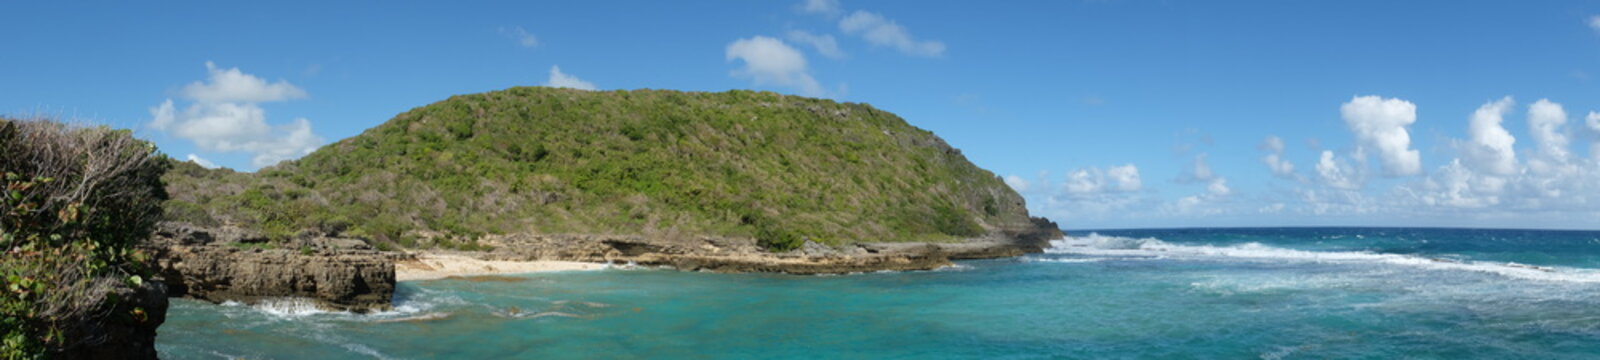 Panorama plage de la Cuve, Saint-François, Guadeloupe